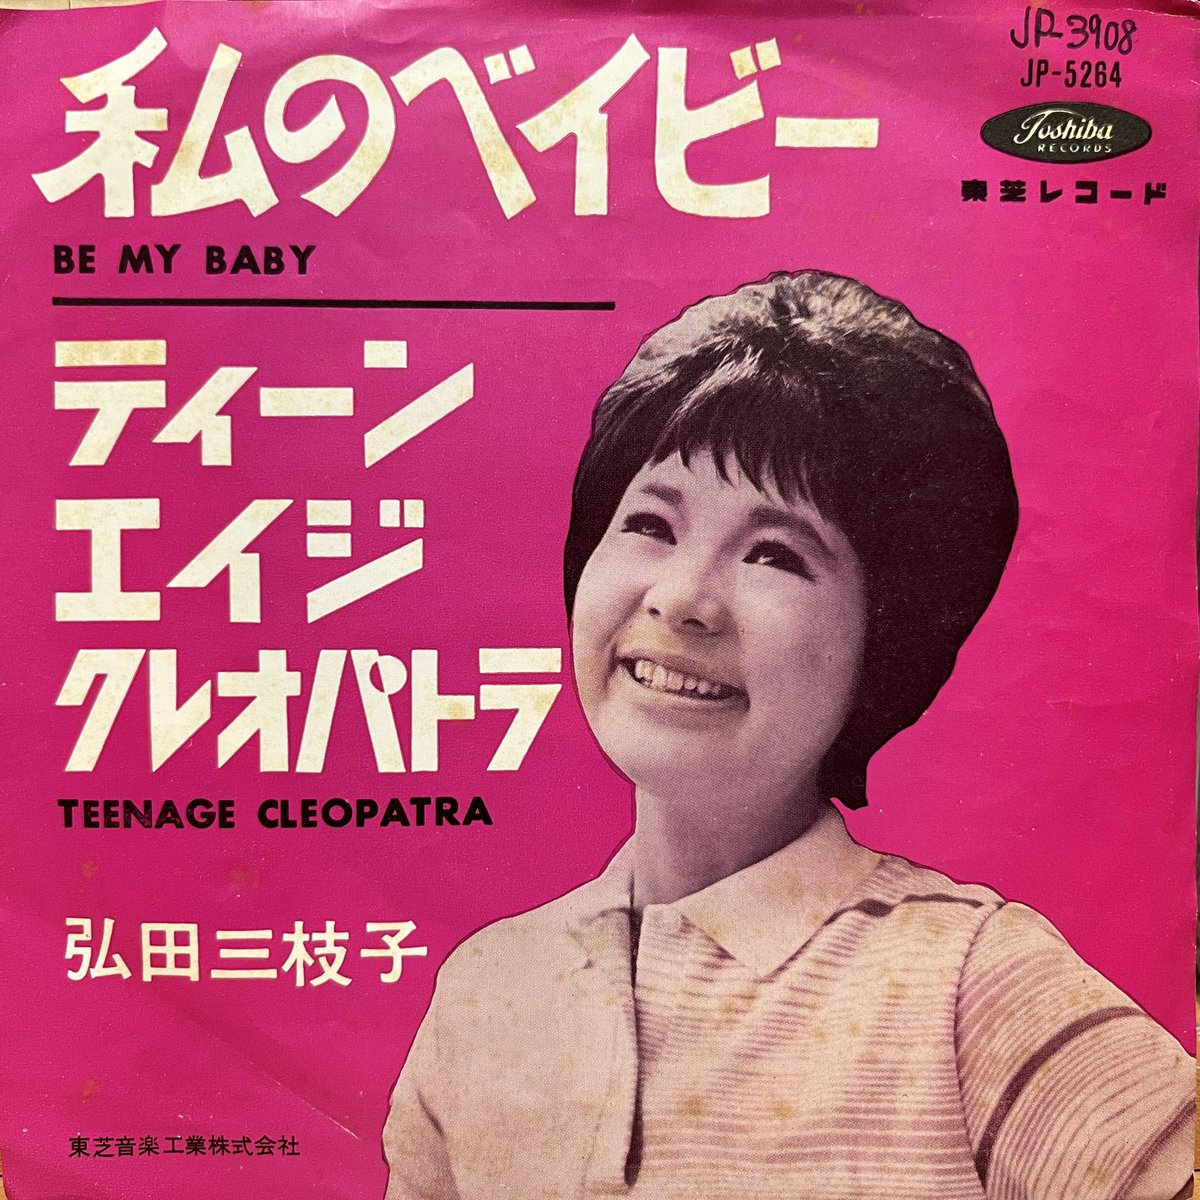 #今日の1曲

弘田三枝子「私のベイビー」
1963年リリース。ロネッツの「BE MY BABY」の日本語カバー。60年代前半はこうした洋楽ポップスのカバーが多いですよね。wikiで調べたら当時まだ16歳だったみたい。とてもそんなに若いとは思えないパンチの効いたボーカルです。

youtu.be/JDbIF-d6oh0?si…